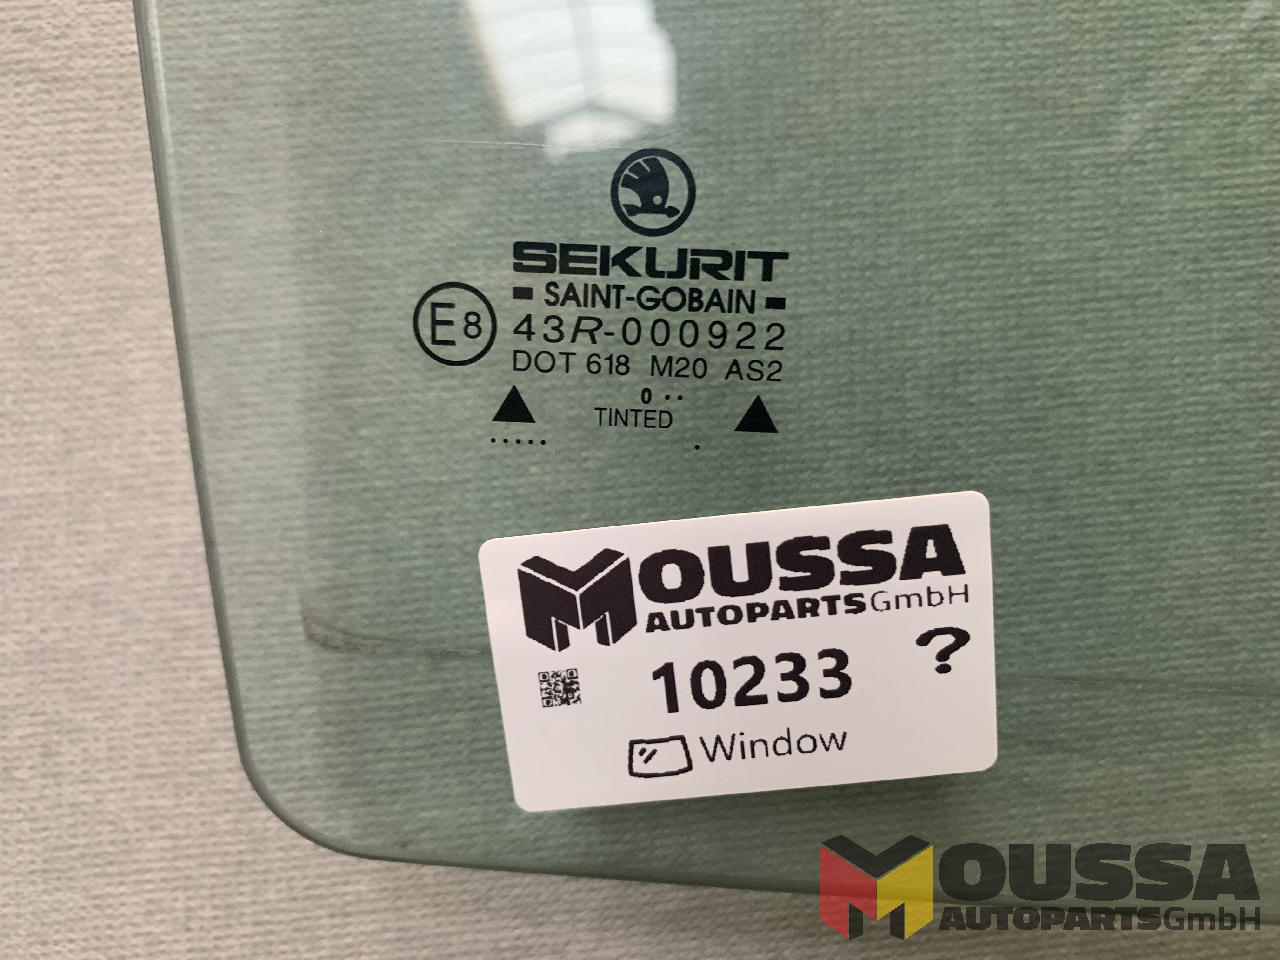 MOUSSA-AUTOPARTS-64921910c9c3a.jpg